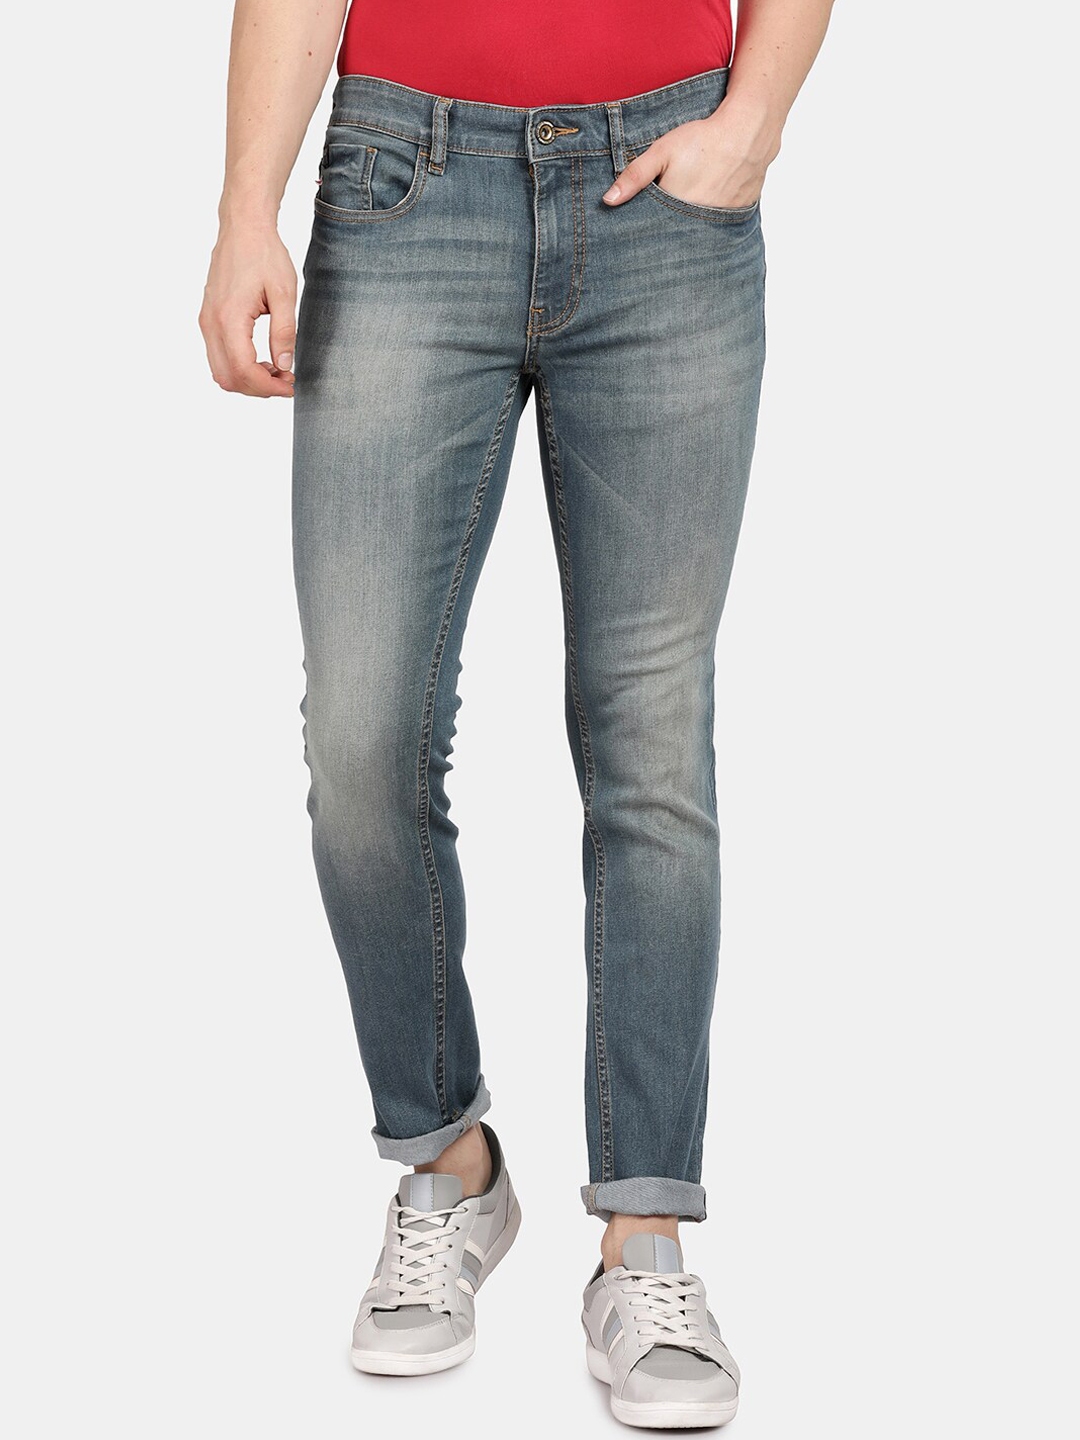 Buy Llak Jeans Men Blue Mid Rise Skinny Fit Heavy Fade Jeans - Jeans ...